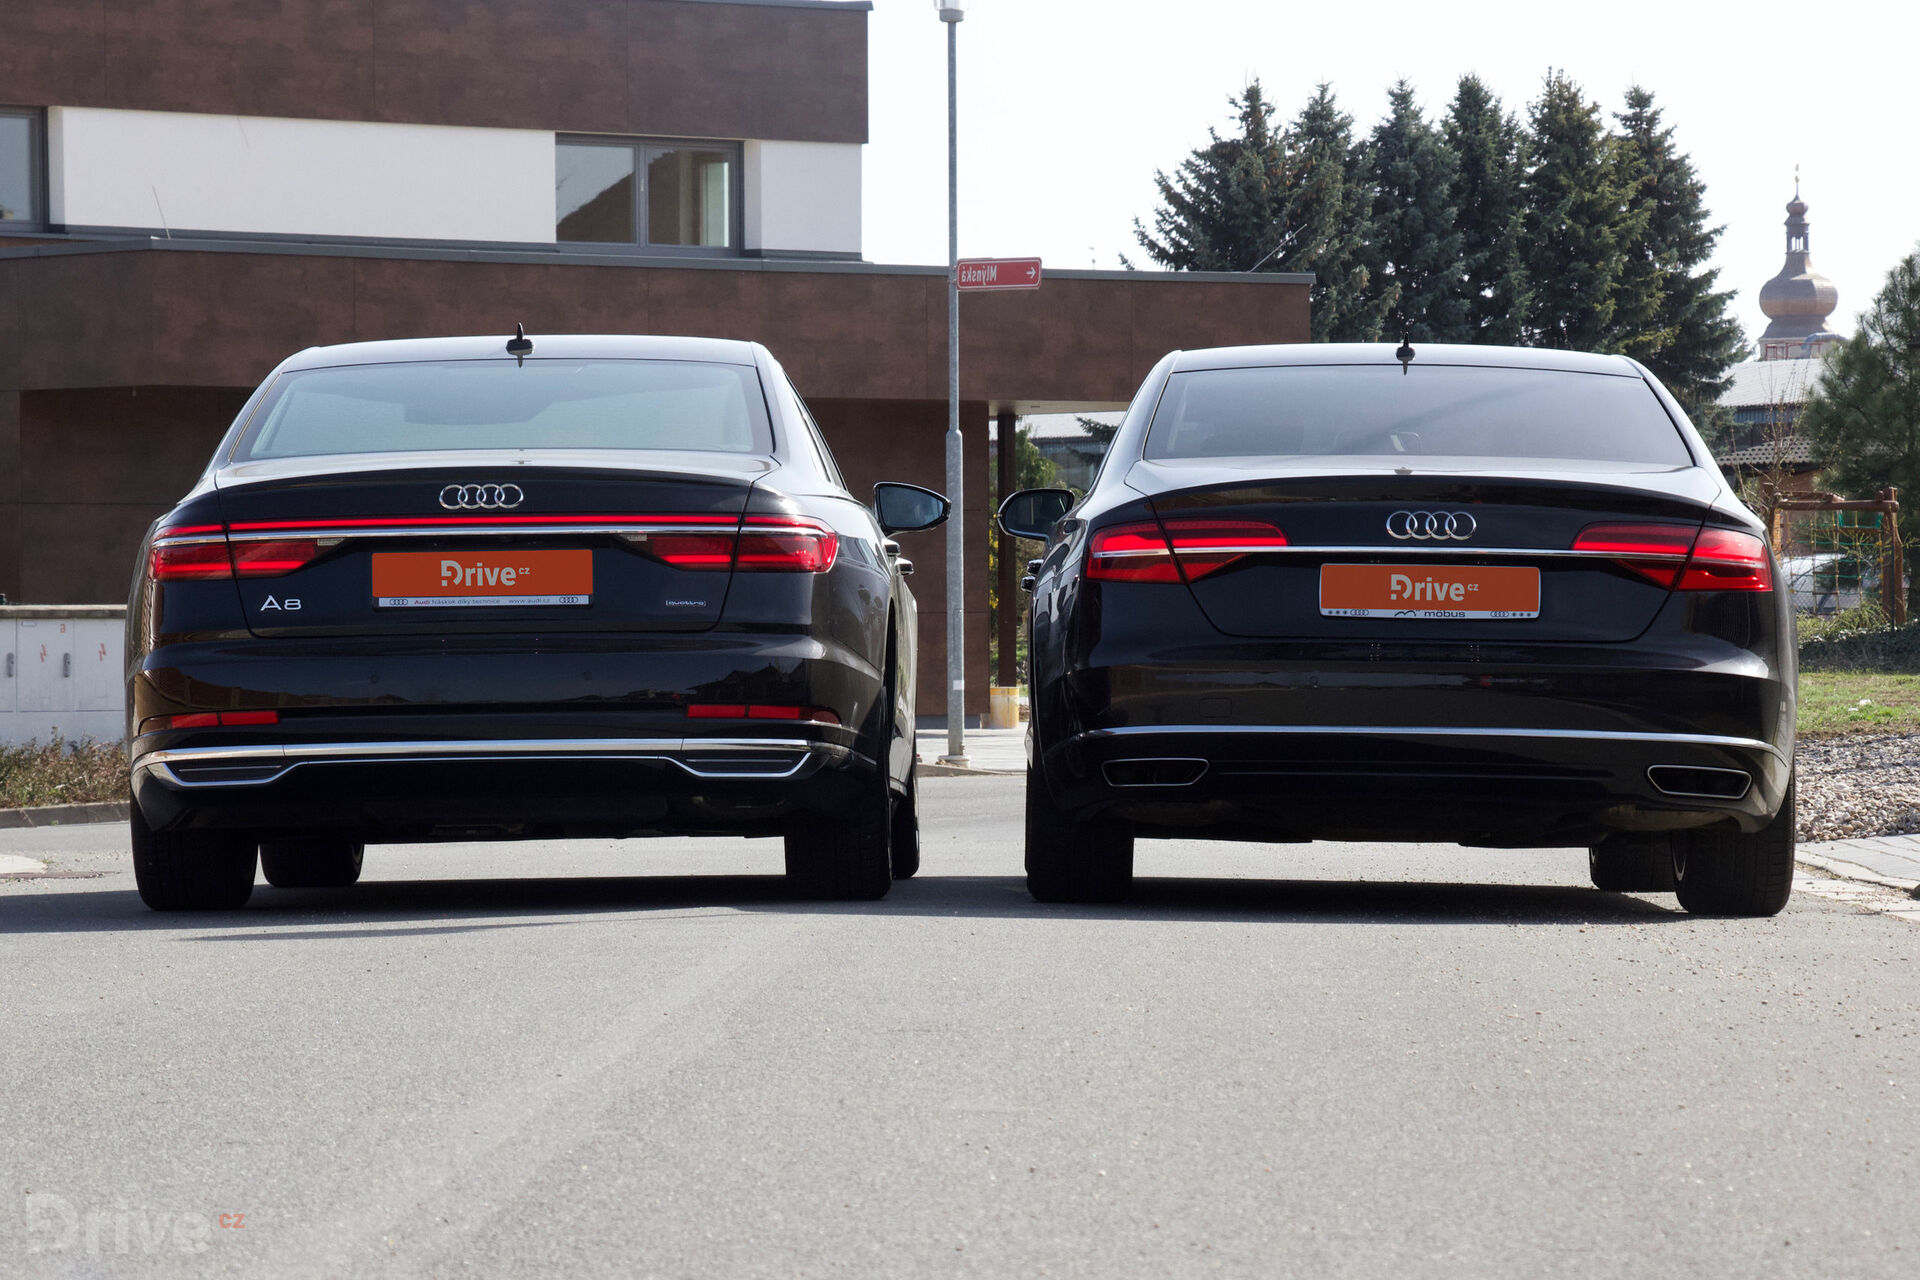 Audi A8 (2010) vs Audi A8 (2017)